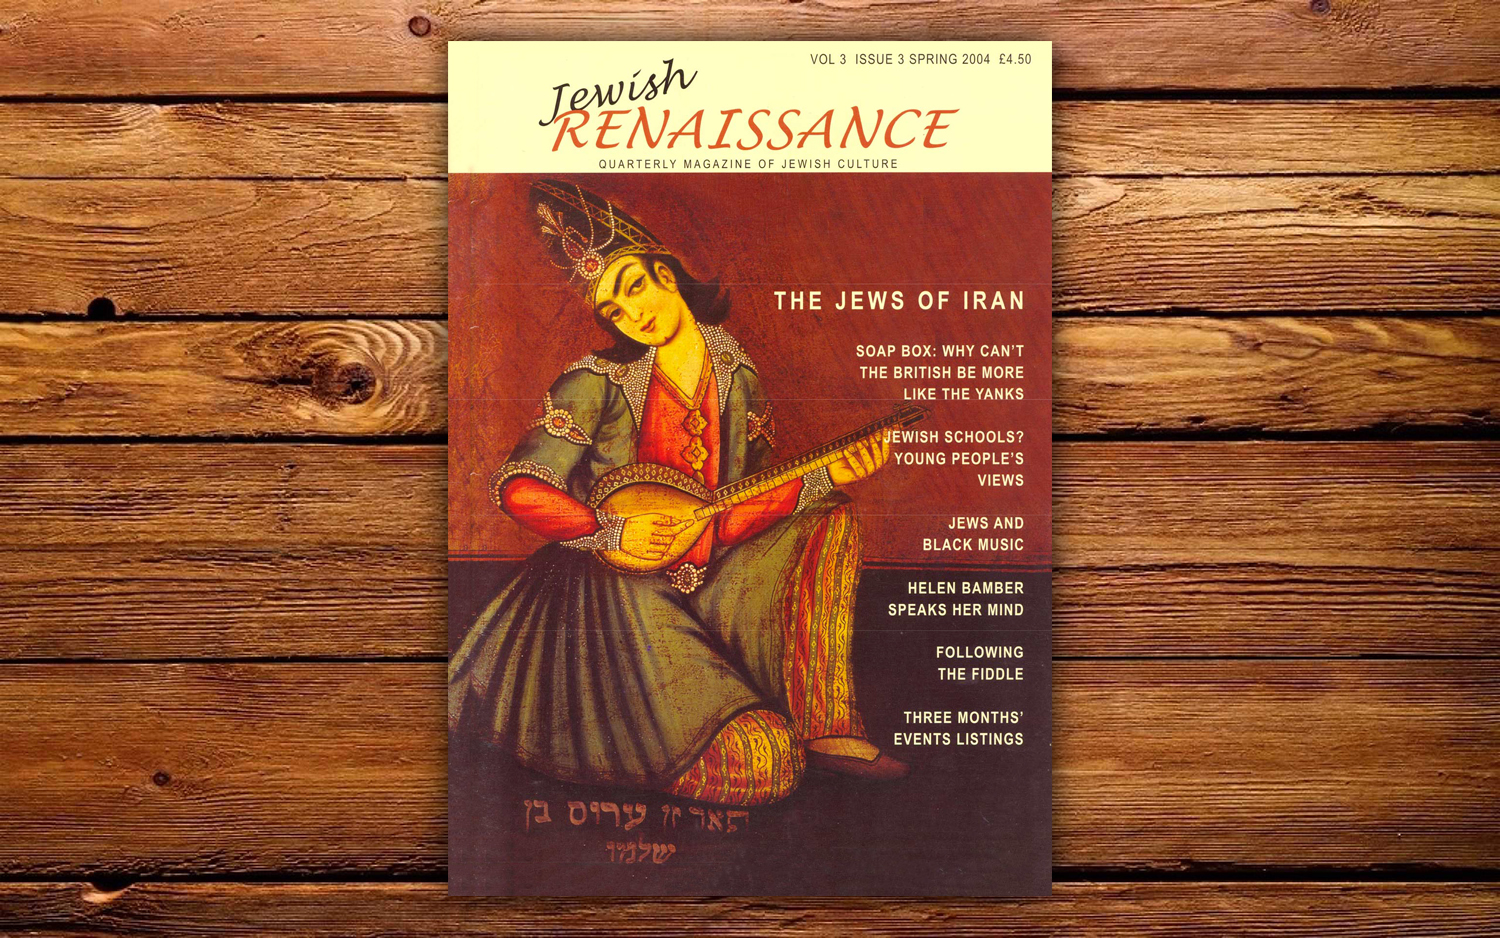 APRIL 2004 // THE JEWS OF IRAN